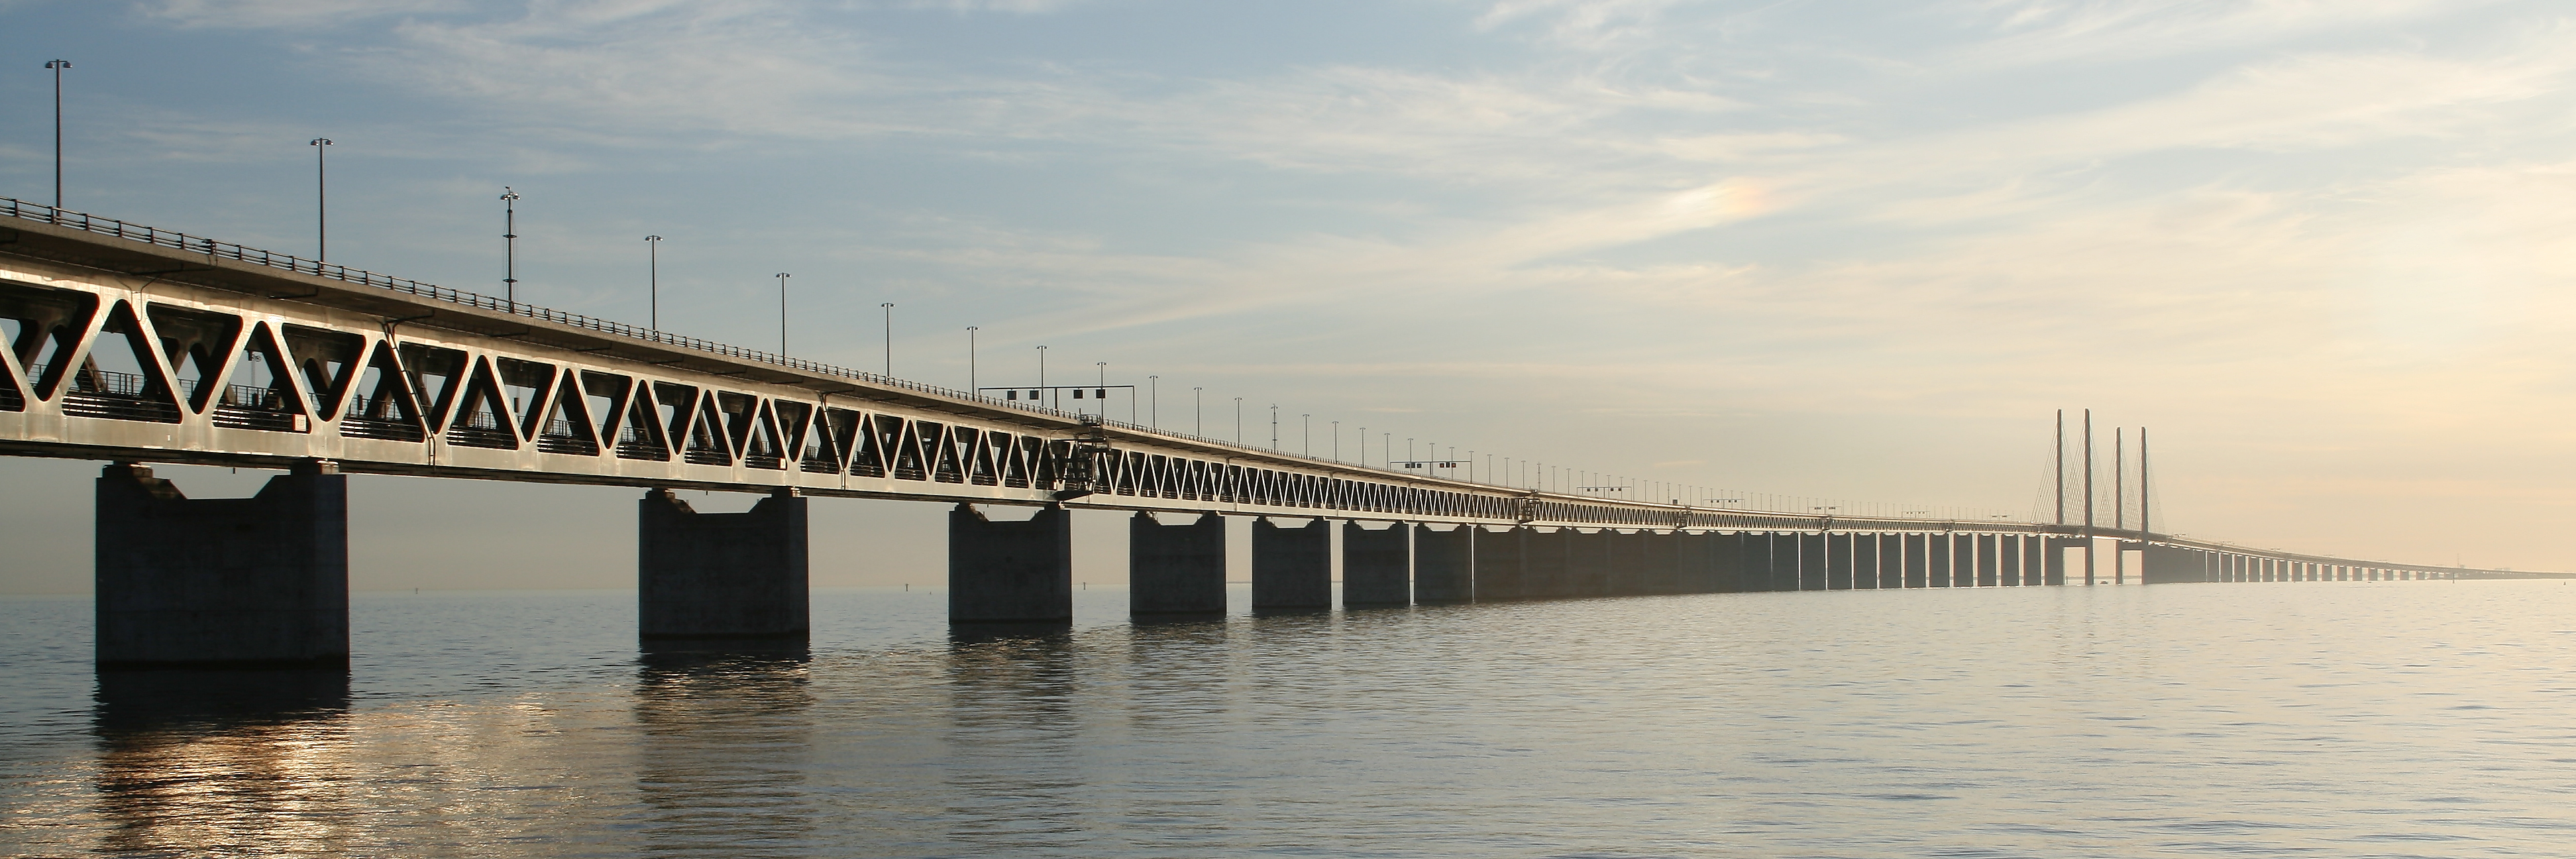 Oresund Puente Escandinavo